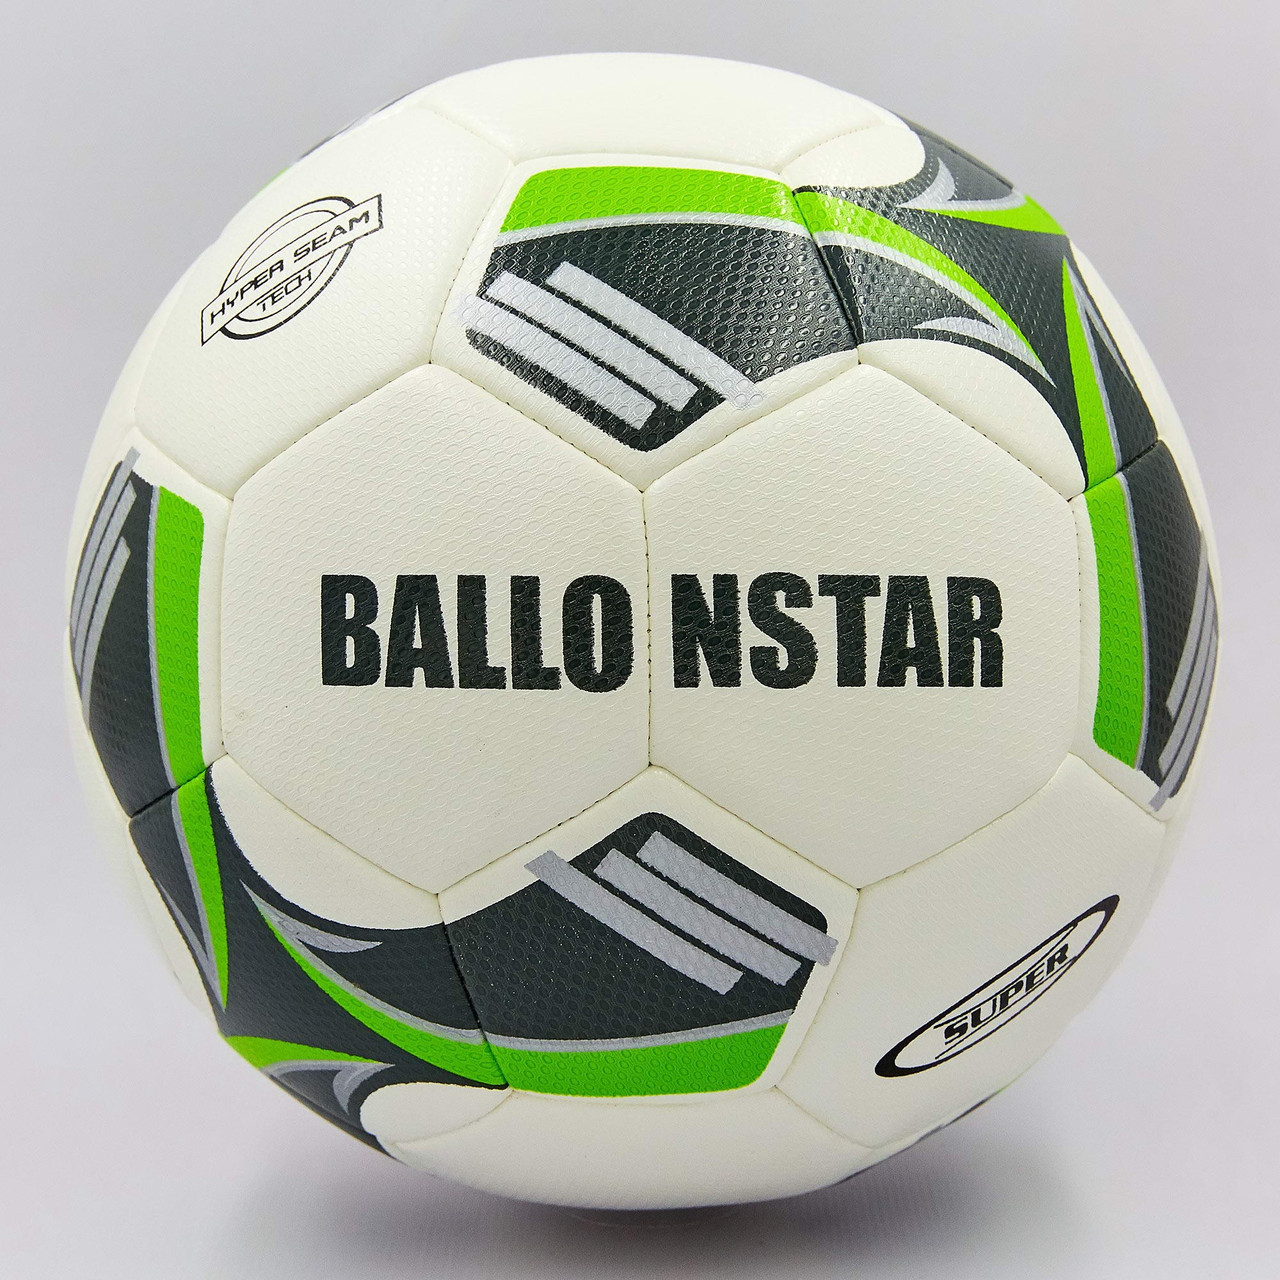 

Мяч футбольный Profi №5 Hydro Technology Ballonstar 0177-3 White-Black-Green